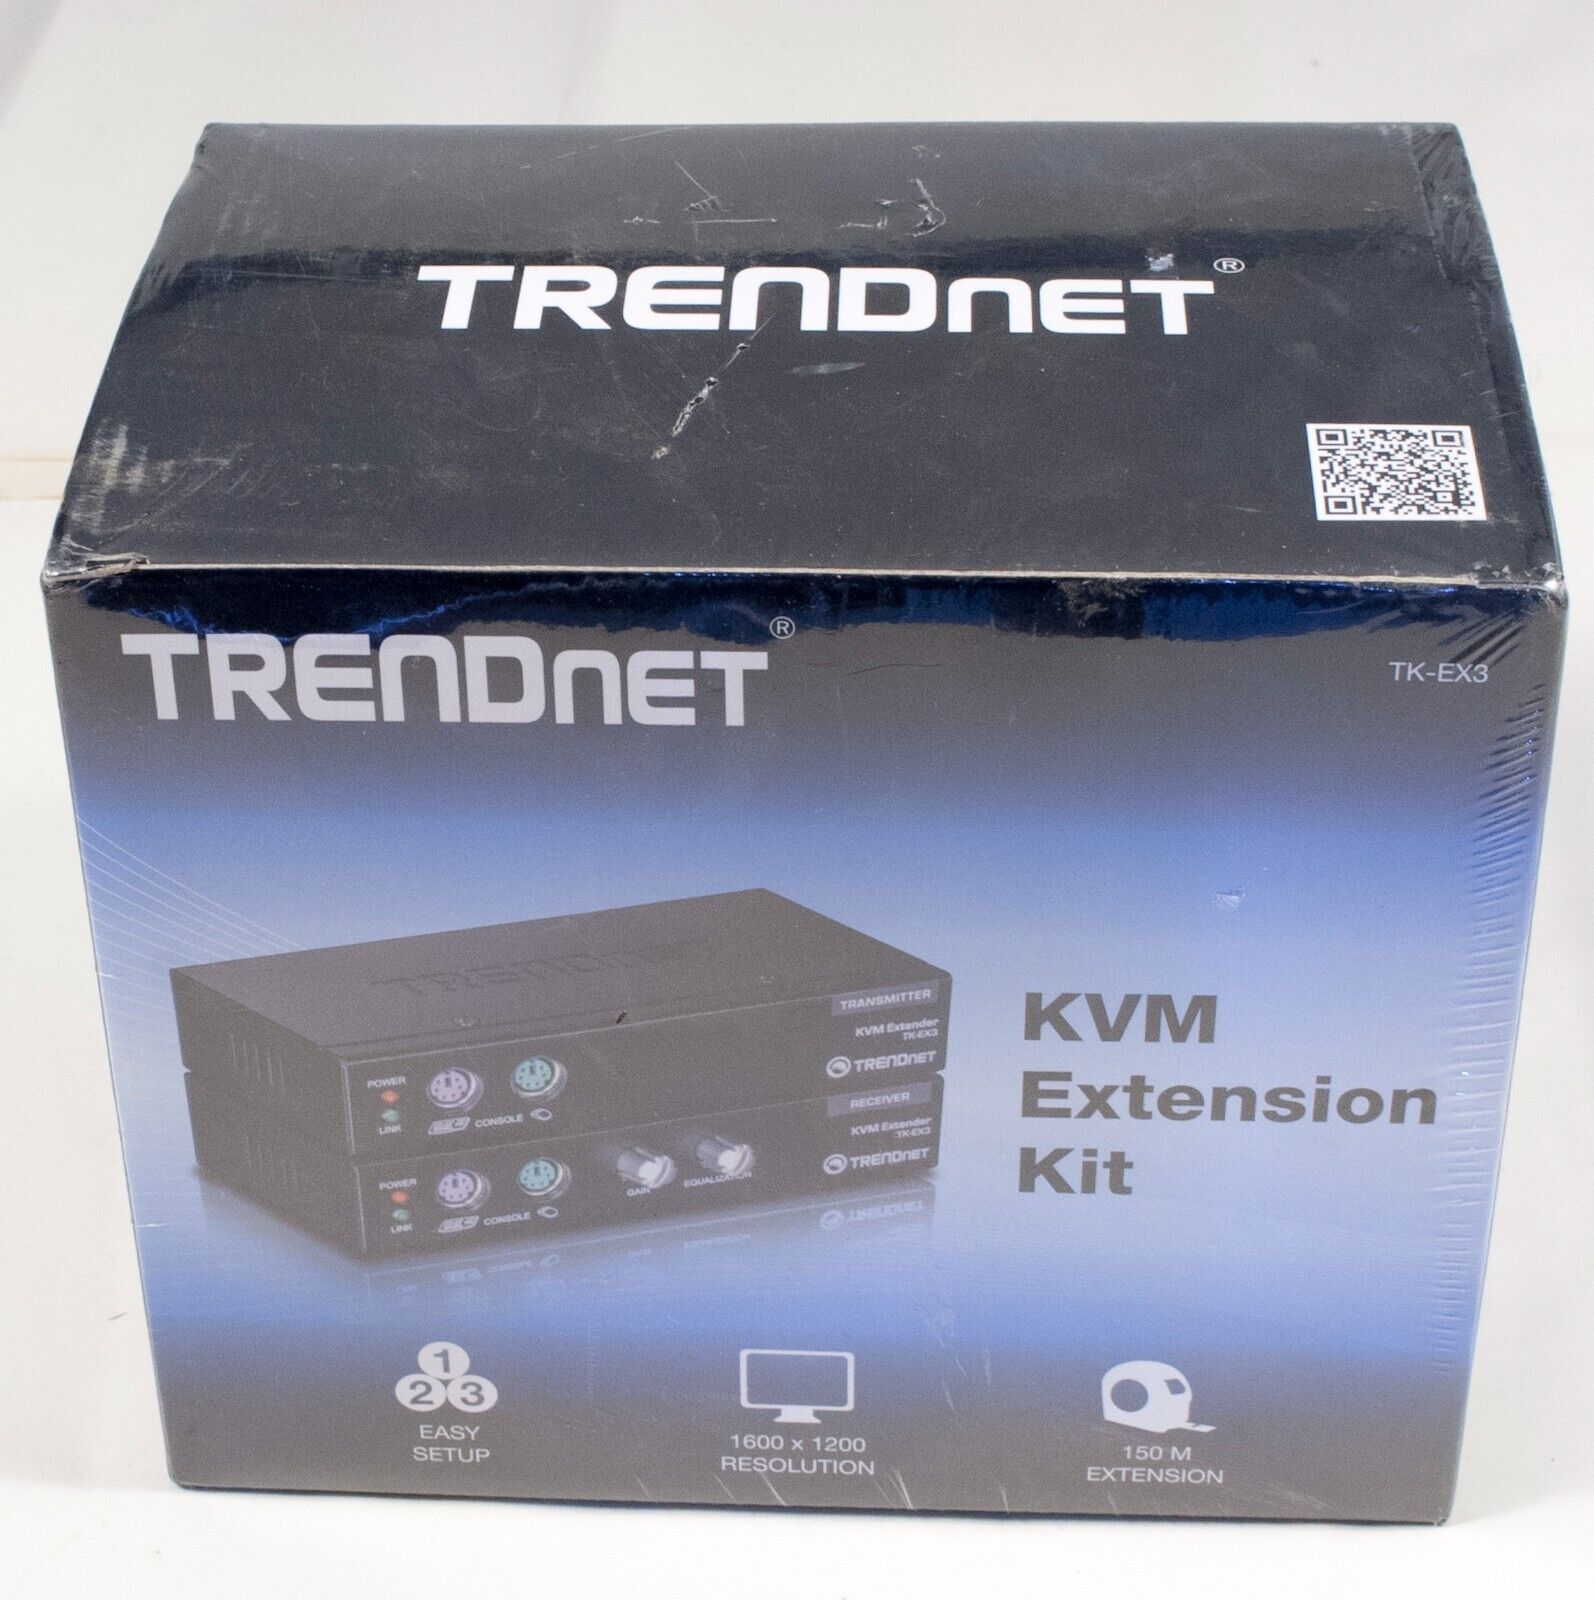 TRENDnet TK-EX3 KVM Extension Kit NEW SEALED IN BOX 